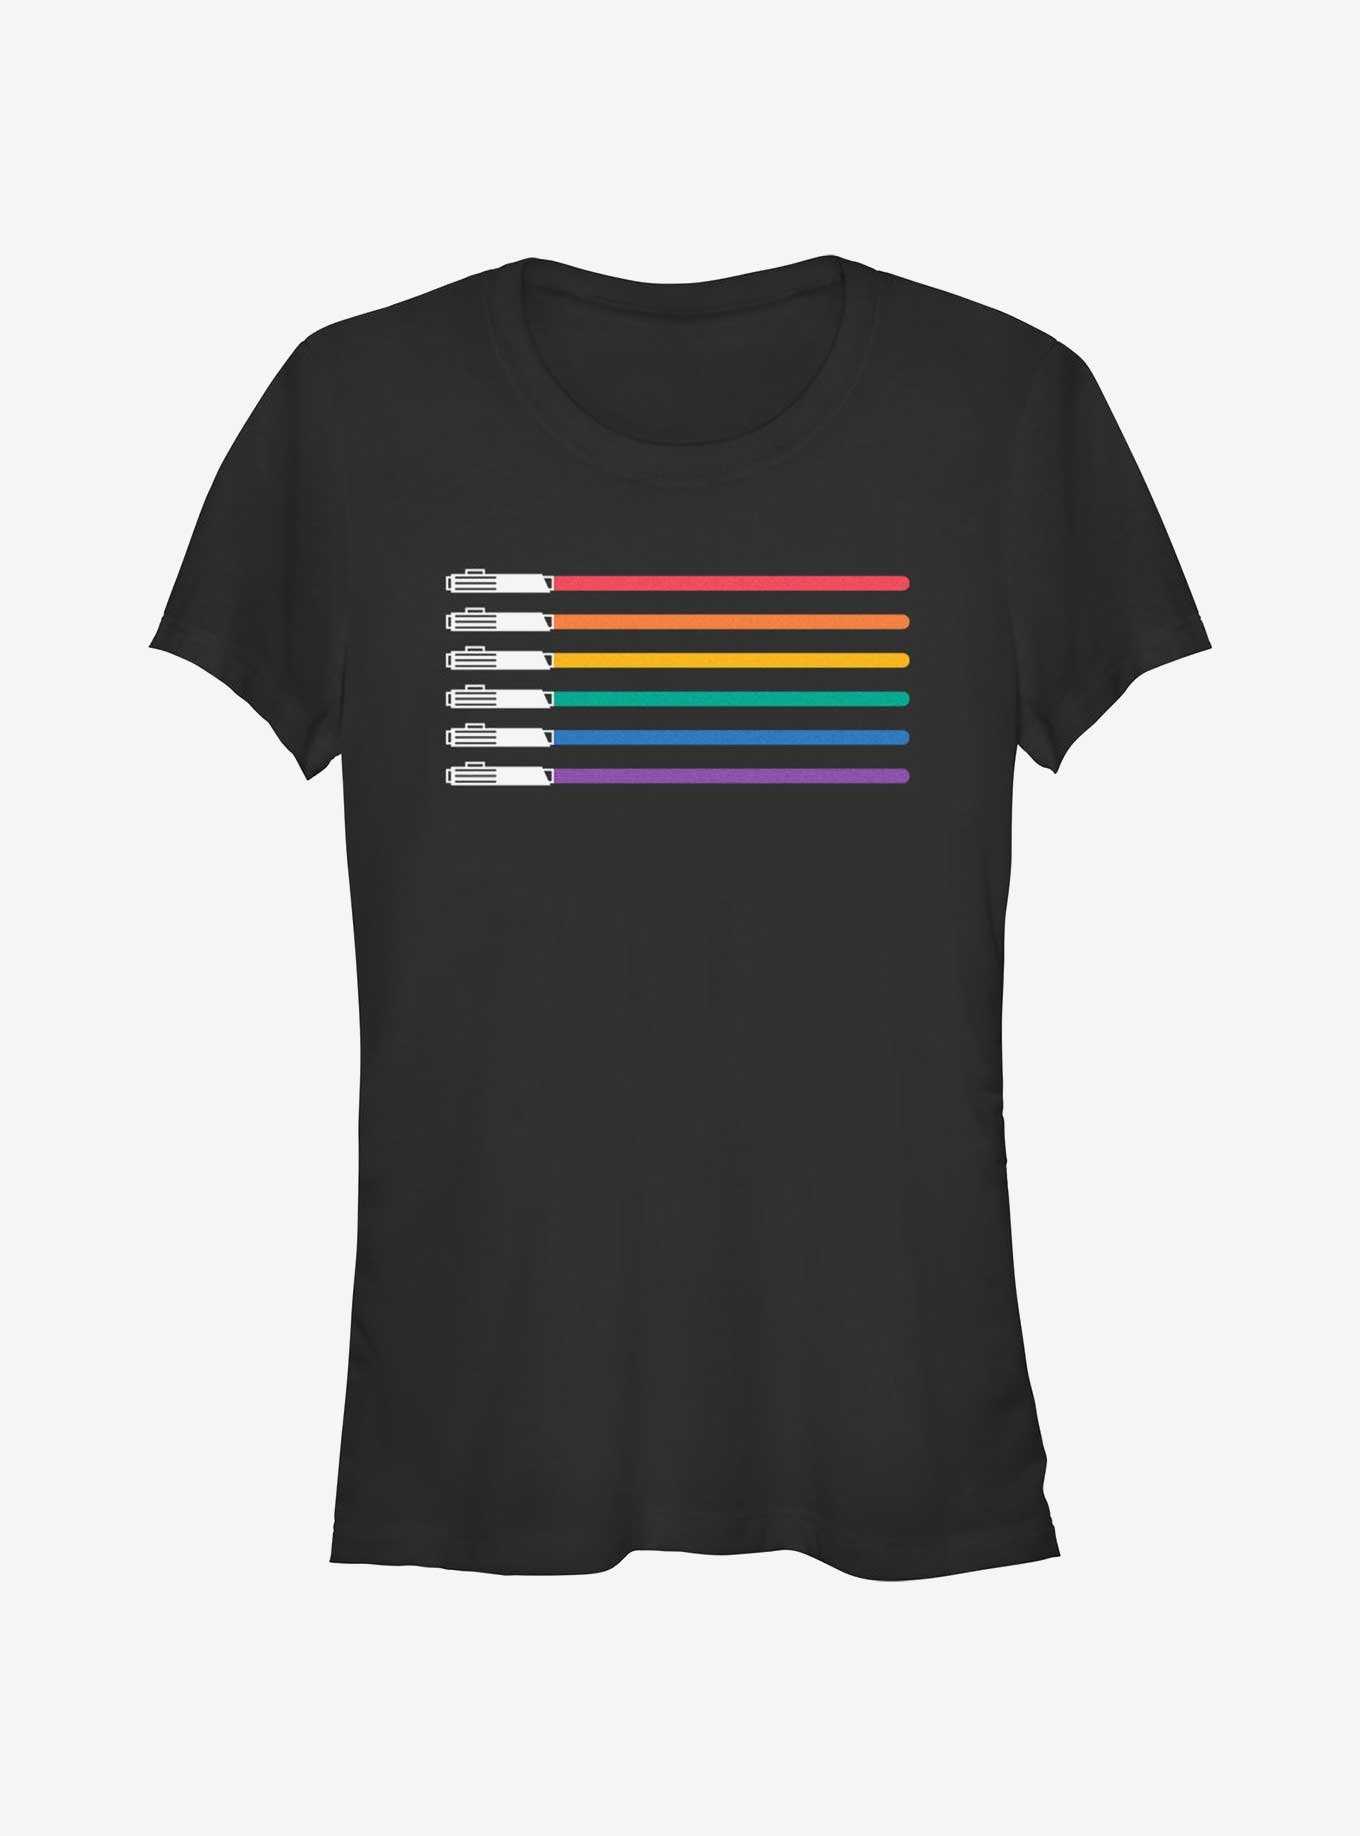 Star Wars Lightsaber Pride Flag T-Shirt, , hi-res